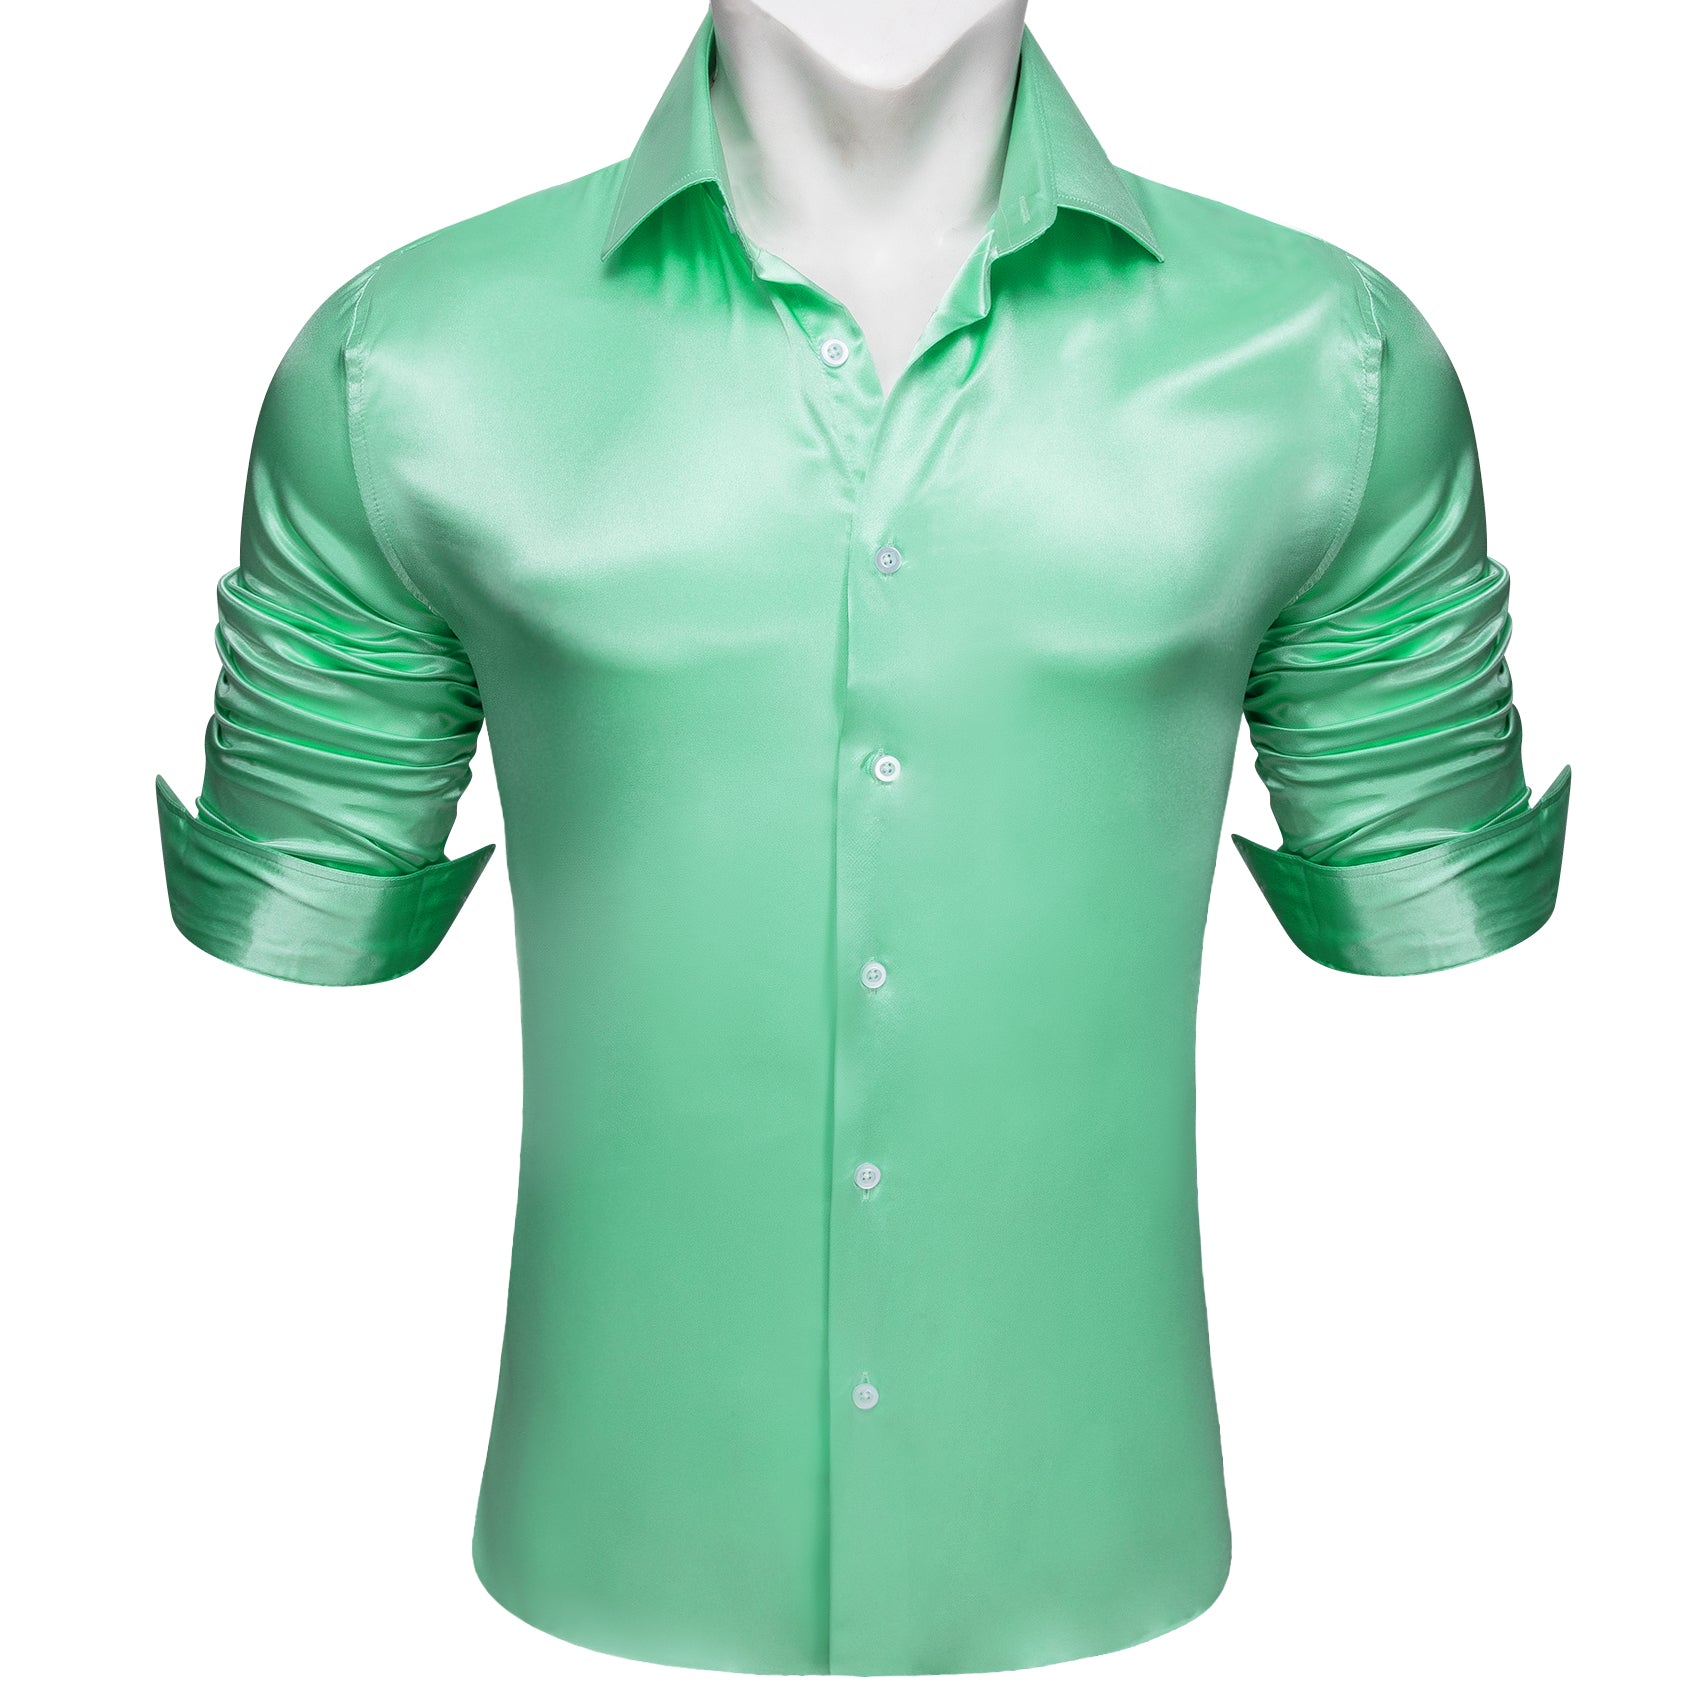 Barry.wang Fashion Green Solid Silk Men's Long Sleeve Shirt